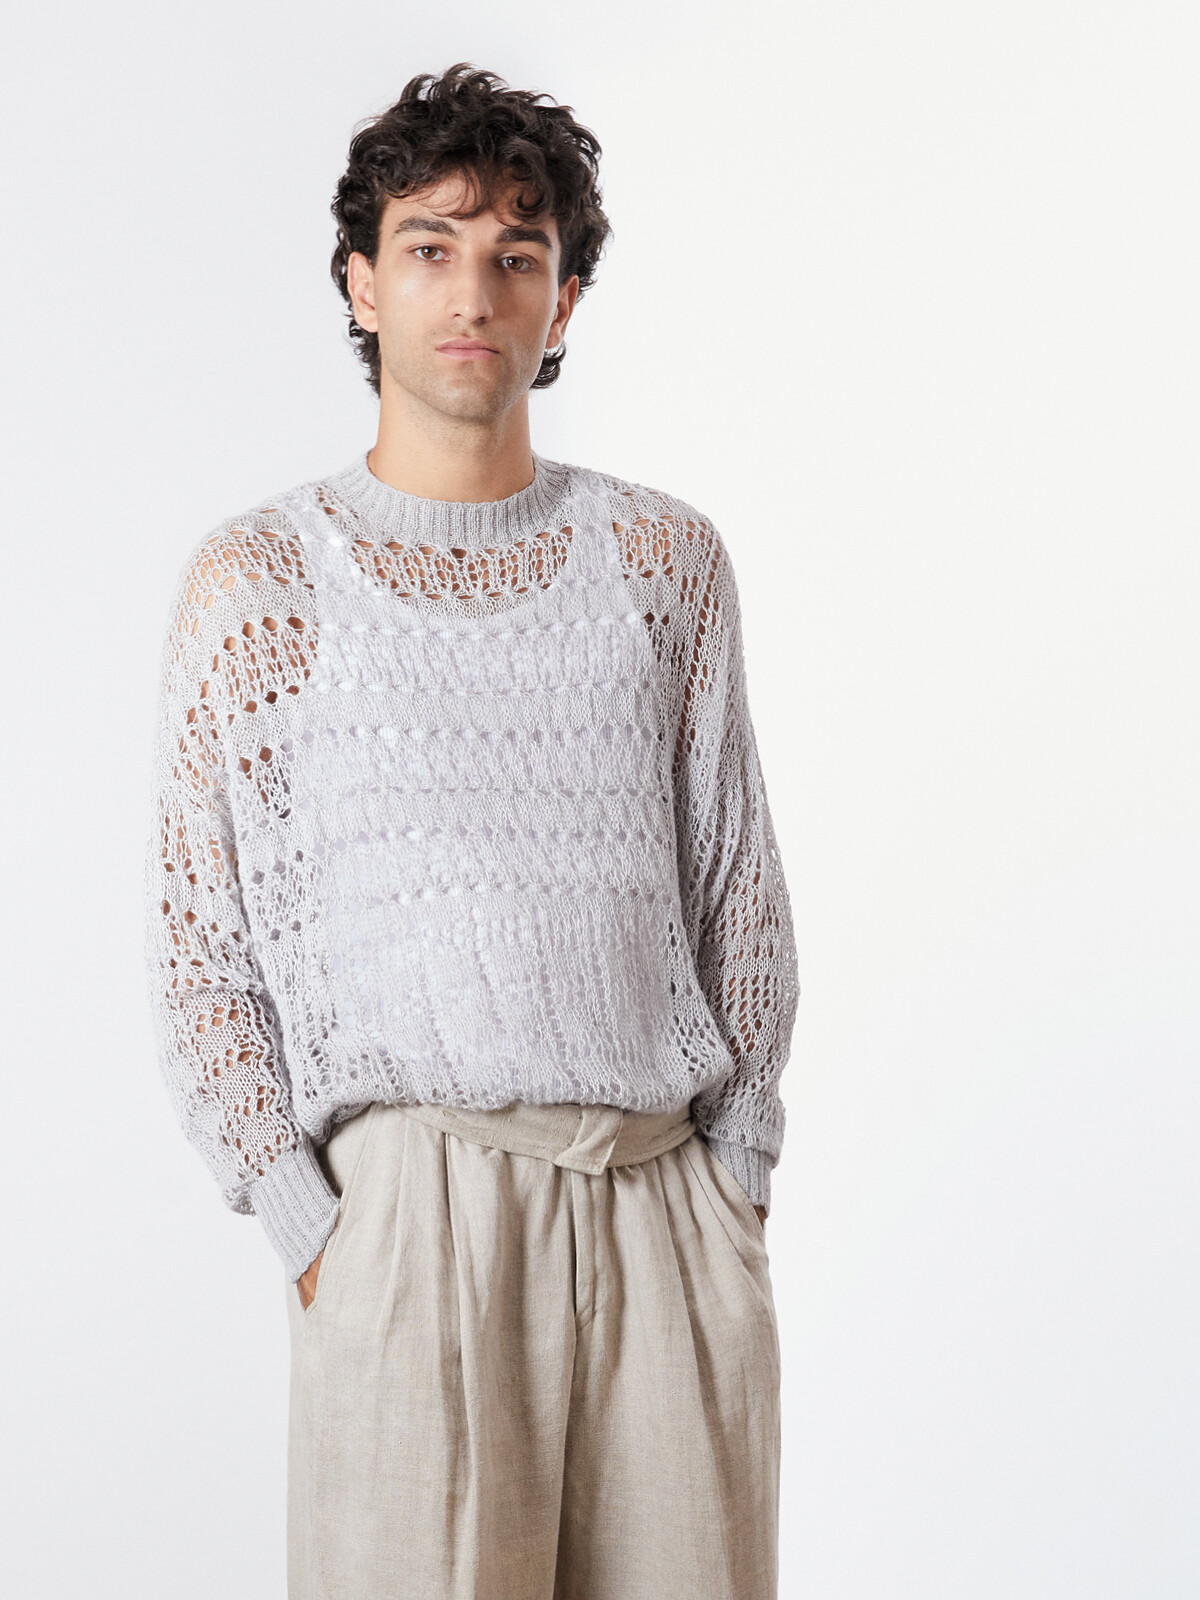 Mosaic lace sweater